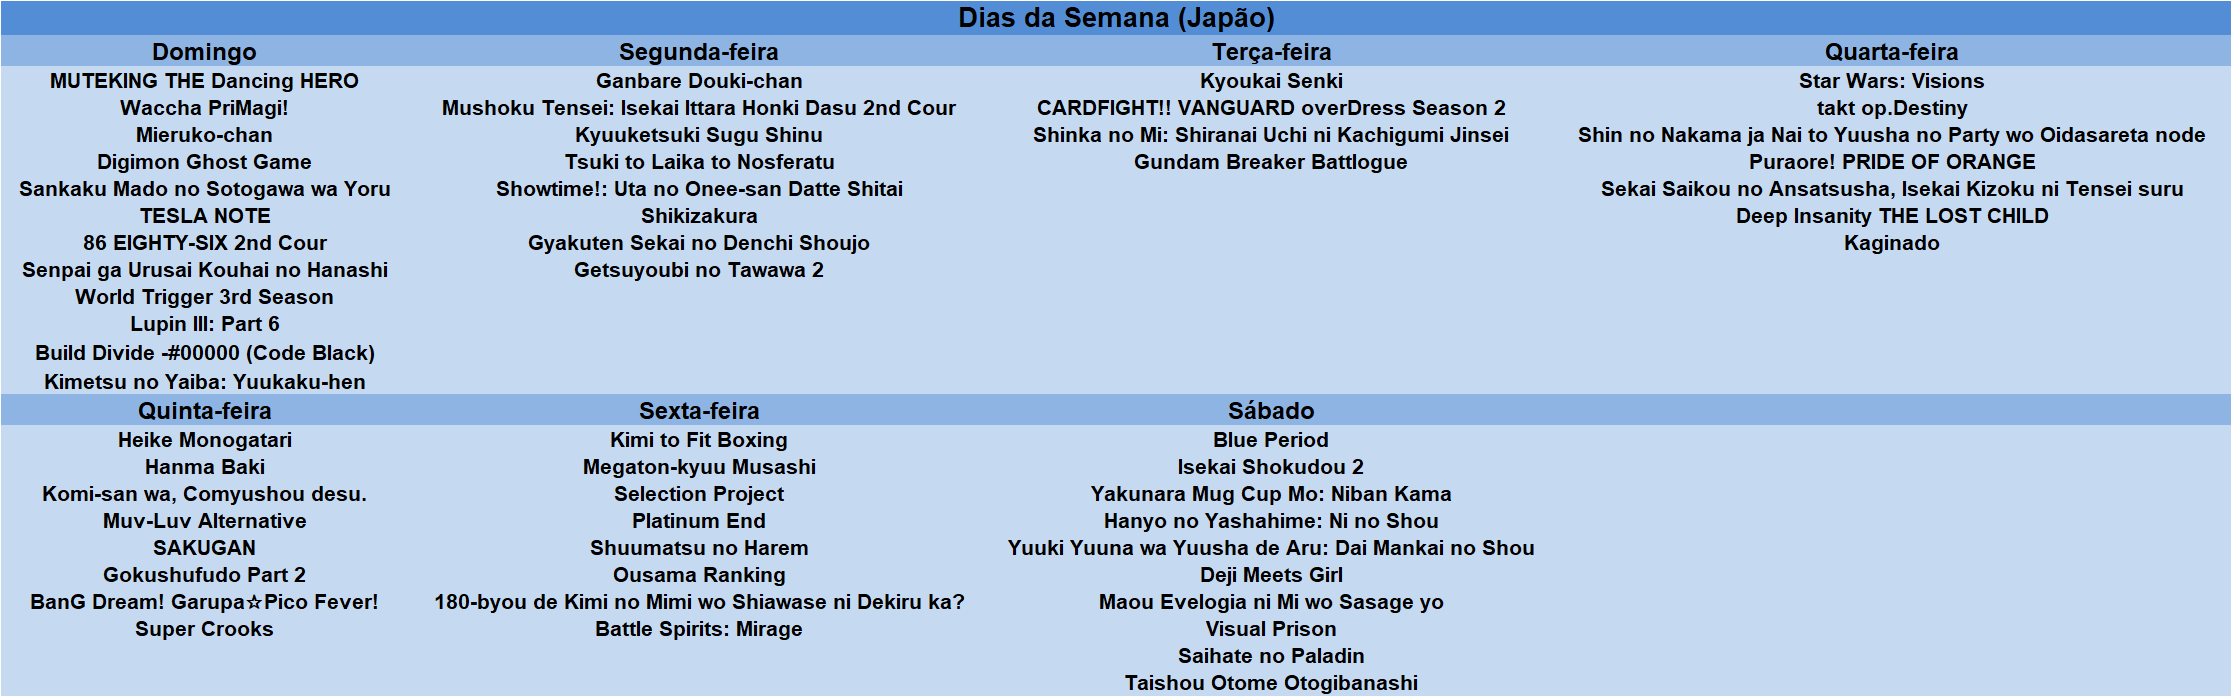 Cronograma da temporada de Outubro Segunda-feira: 1) Shinka no Mi 2)  Kyuuketsuki sugu shinu 3)